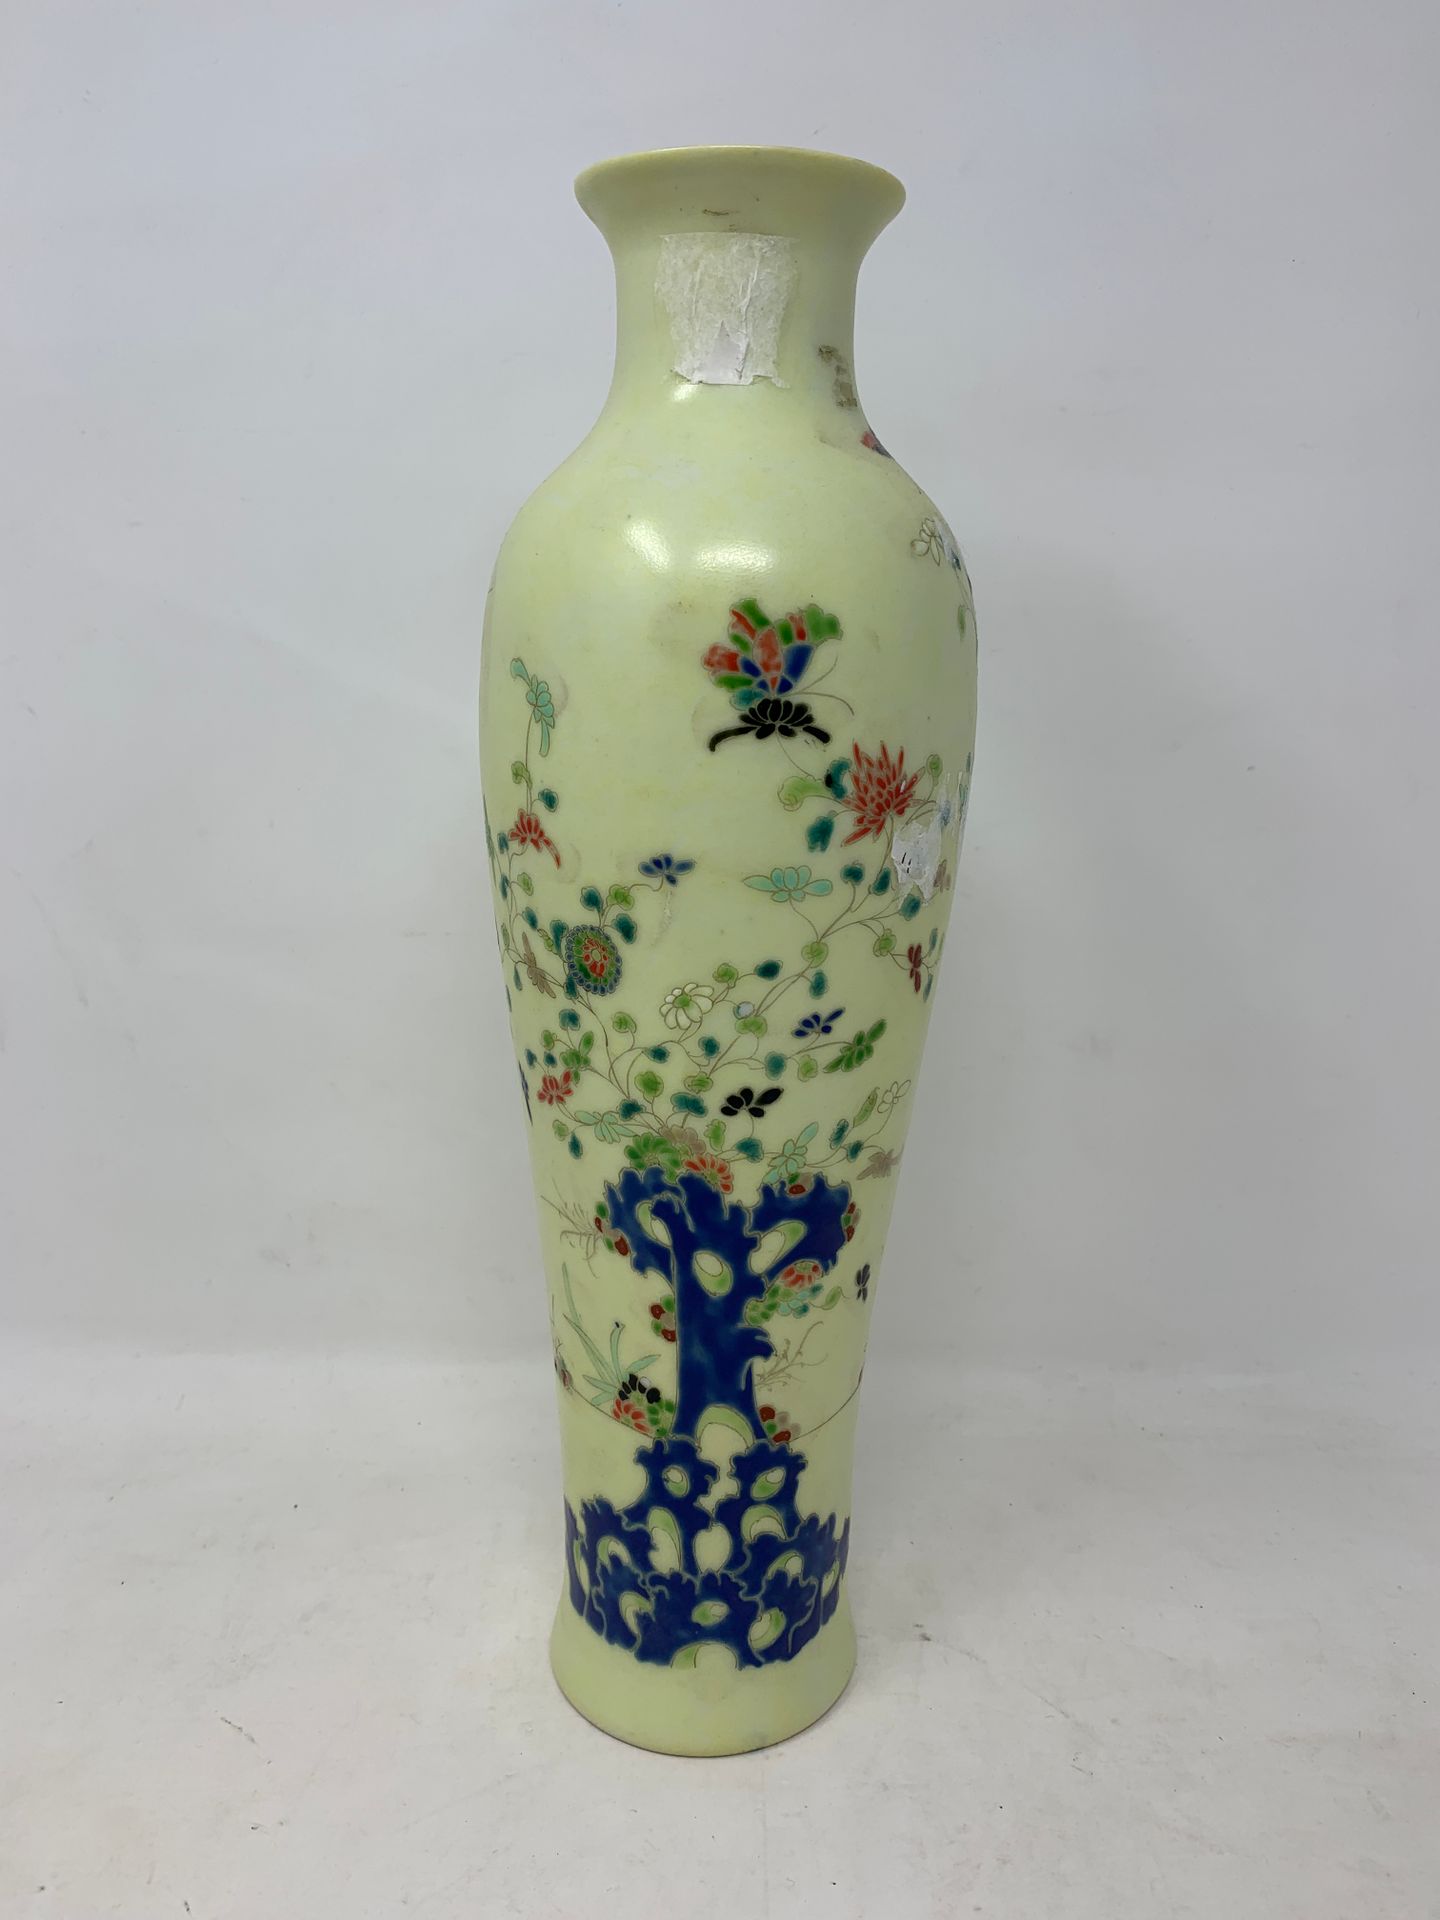 Null 
Vase mit Baum- und Blumendekor

Japan

H. 31.5 cm